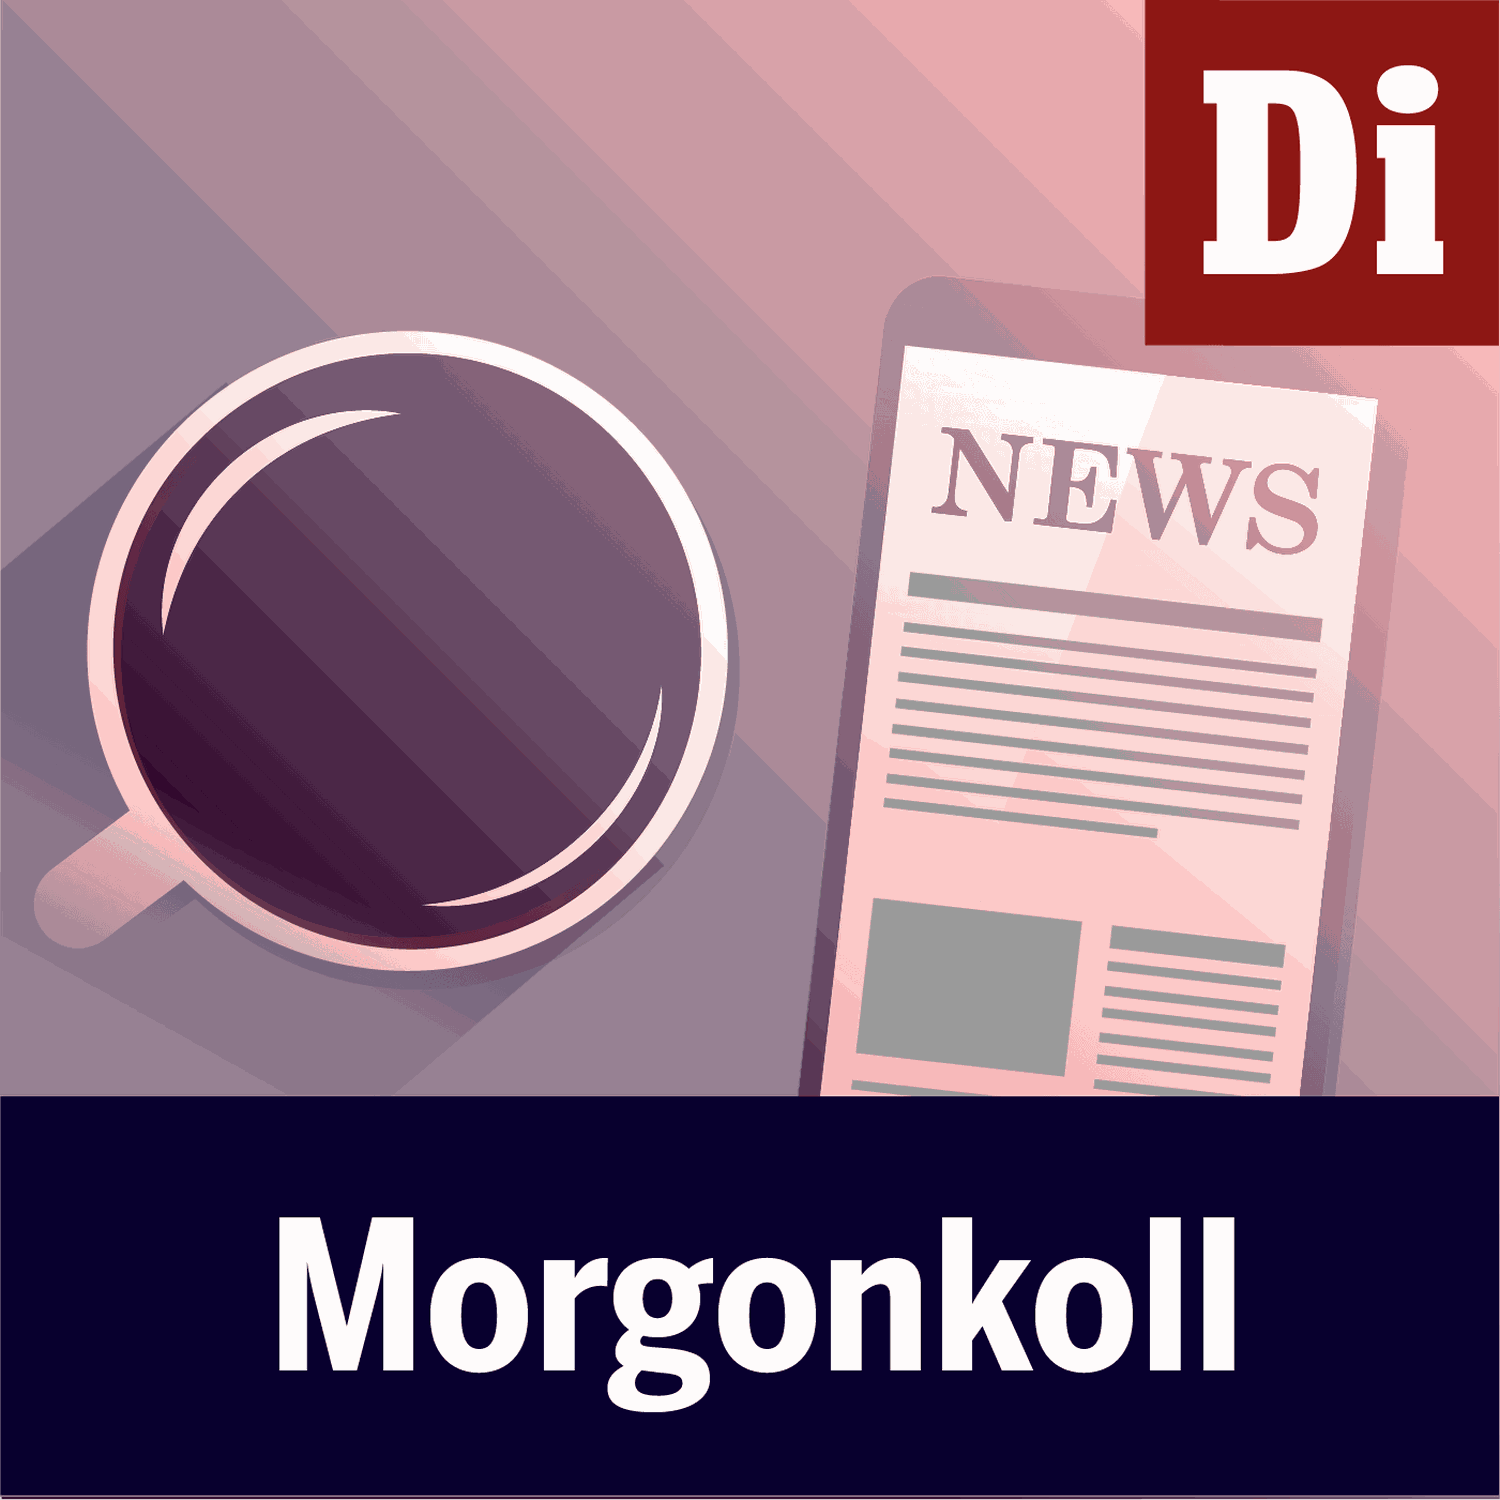 Di Morgonkoll 13 januari: Bostadspriserna i Stockholm steg under svag månad